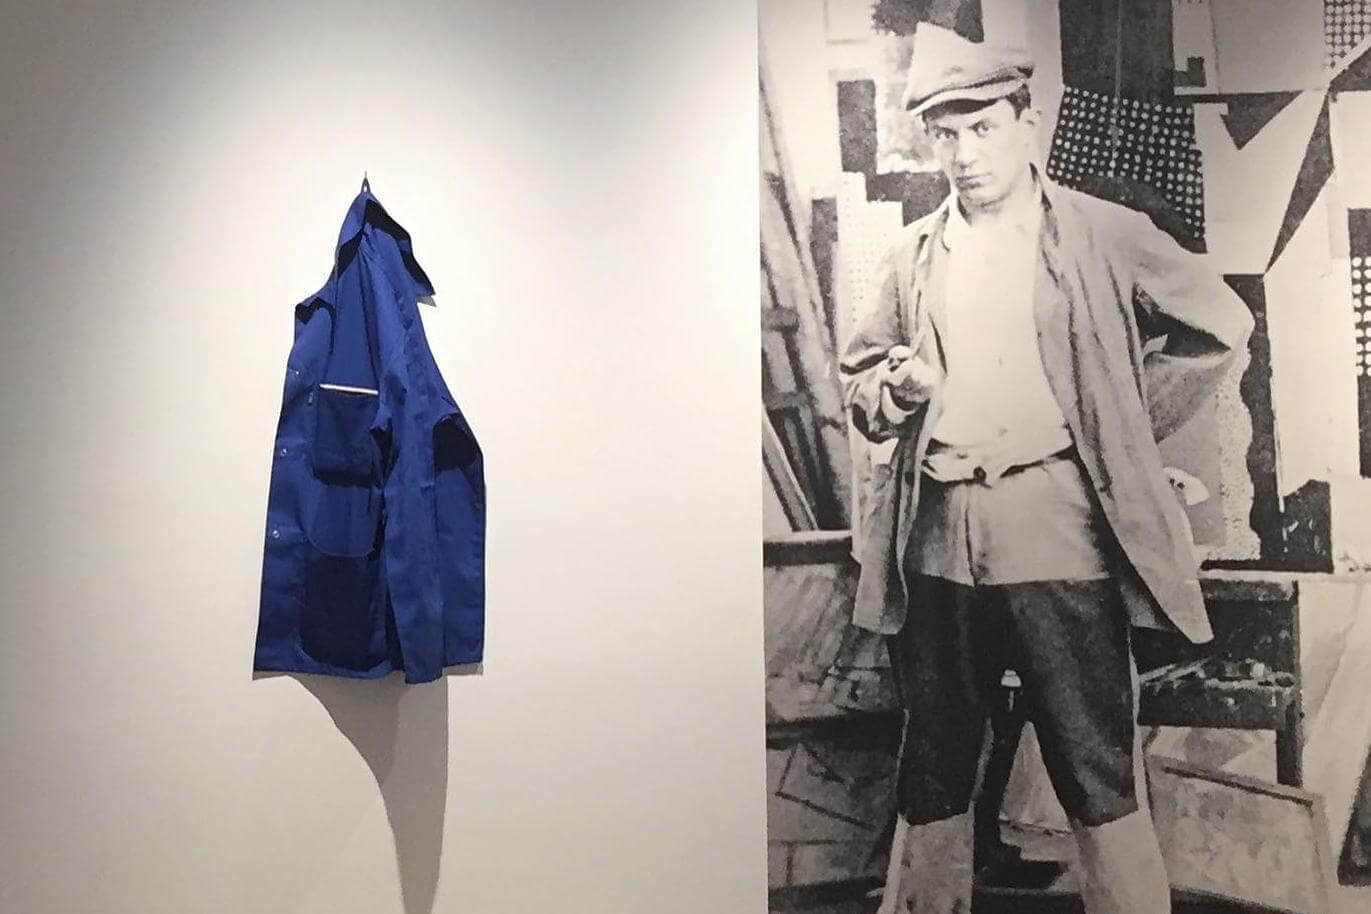 Una jubilada robó una obra del Museo Picasso de París tras confundirla con un saco olvidado